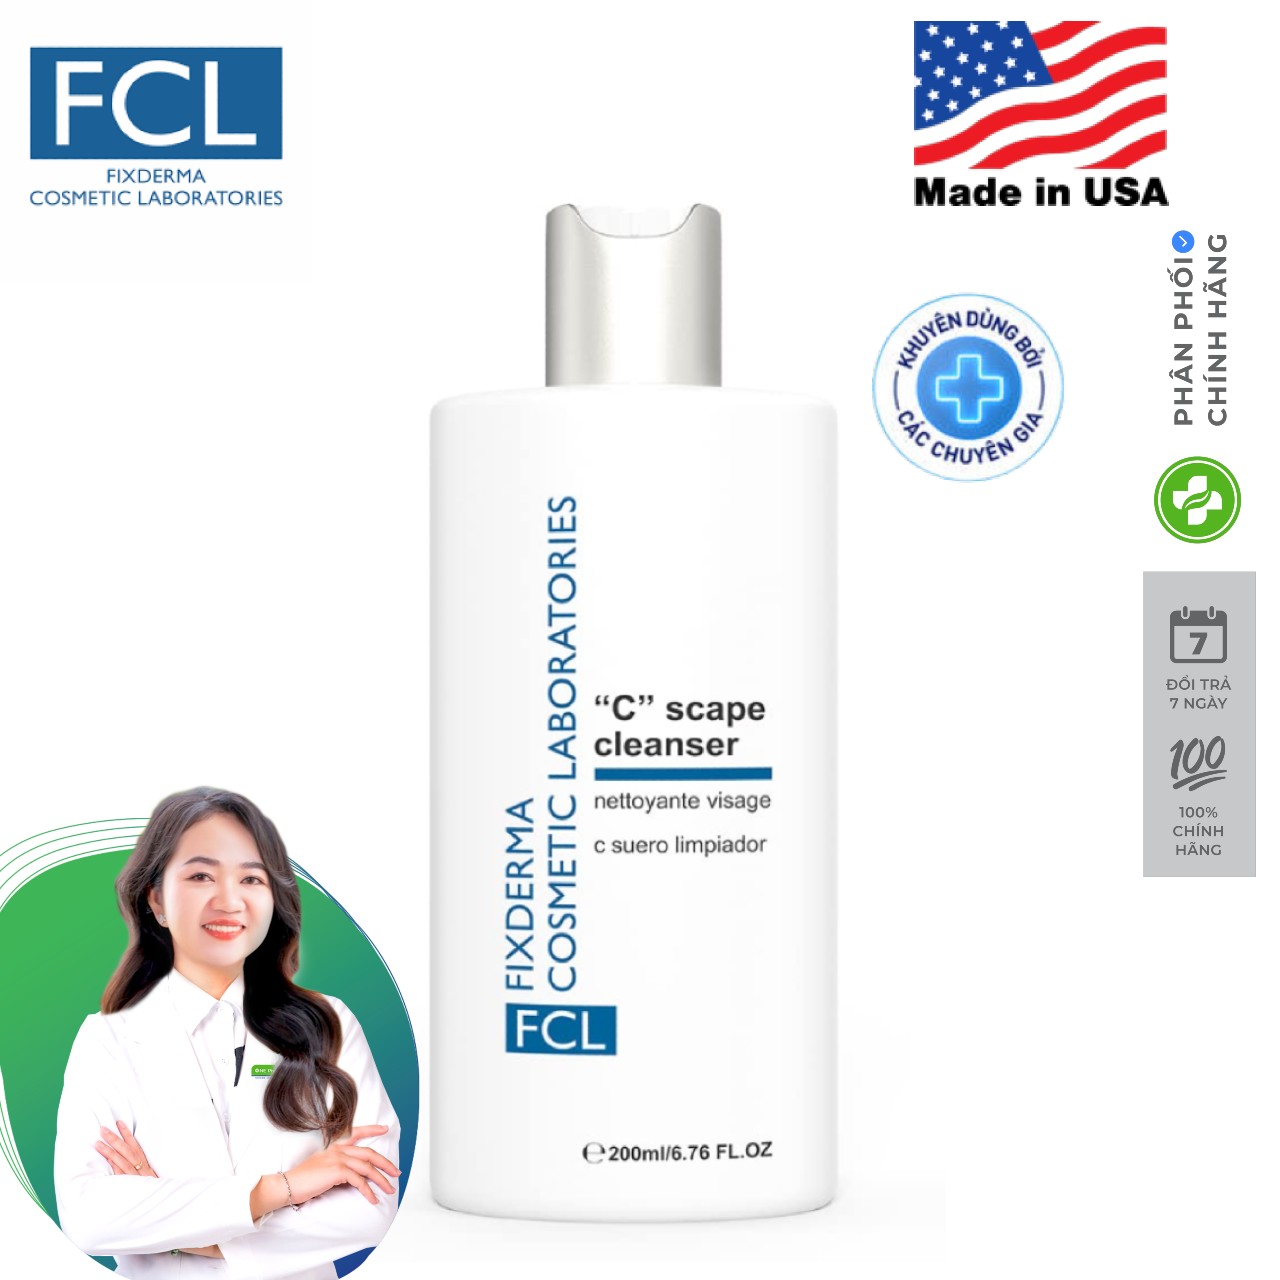 Sữa rửa mặt chống oxy hóa Fixderma FCL C Scape Cleanser 200ml